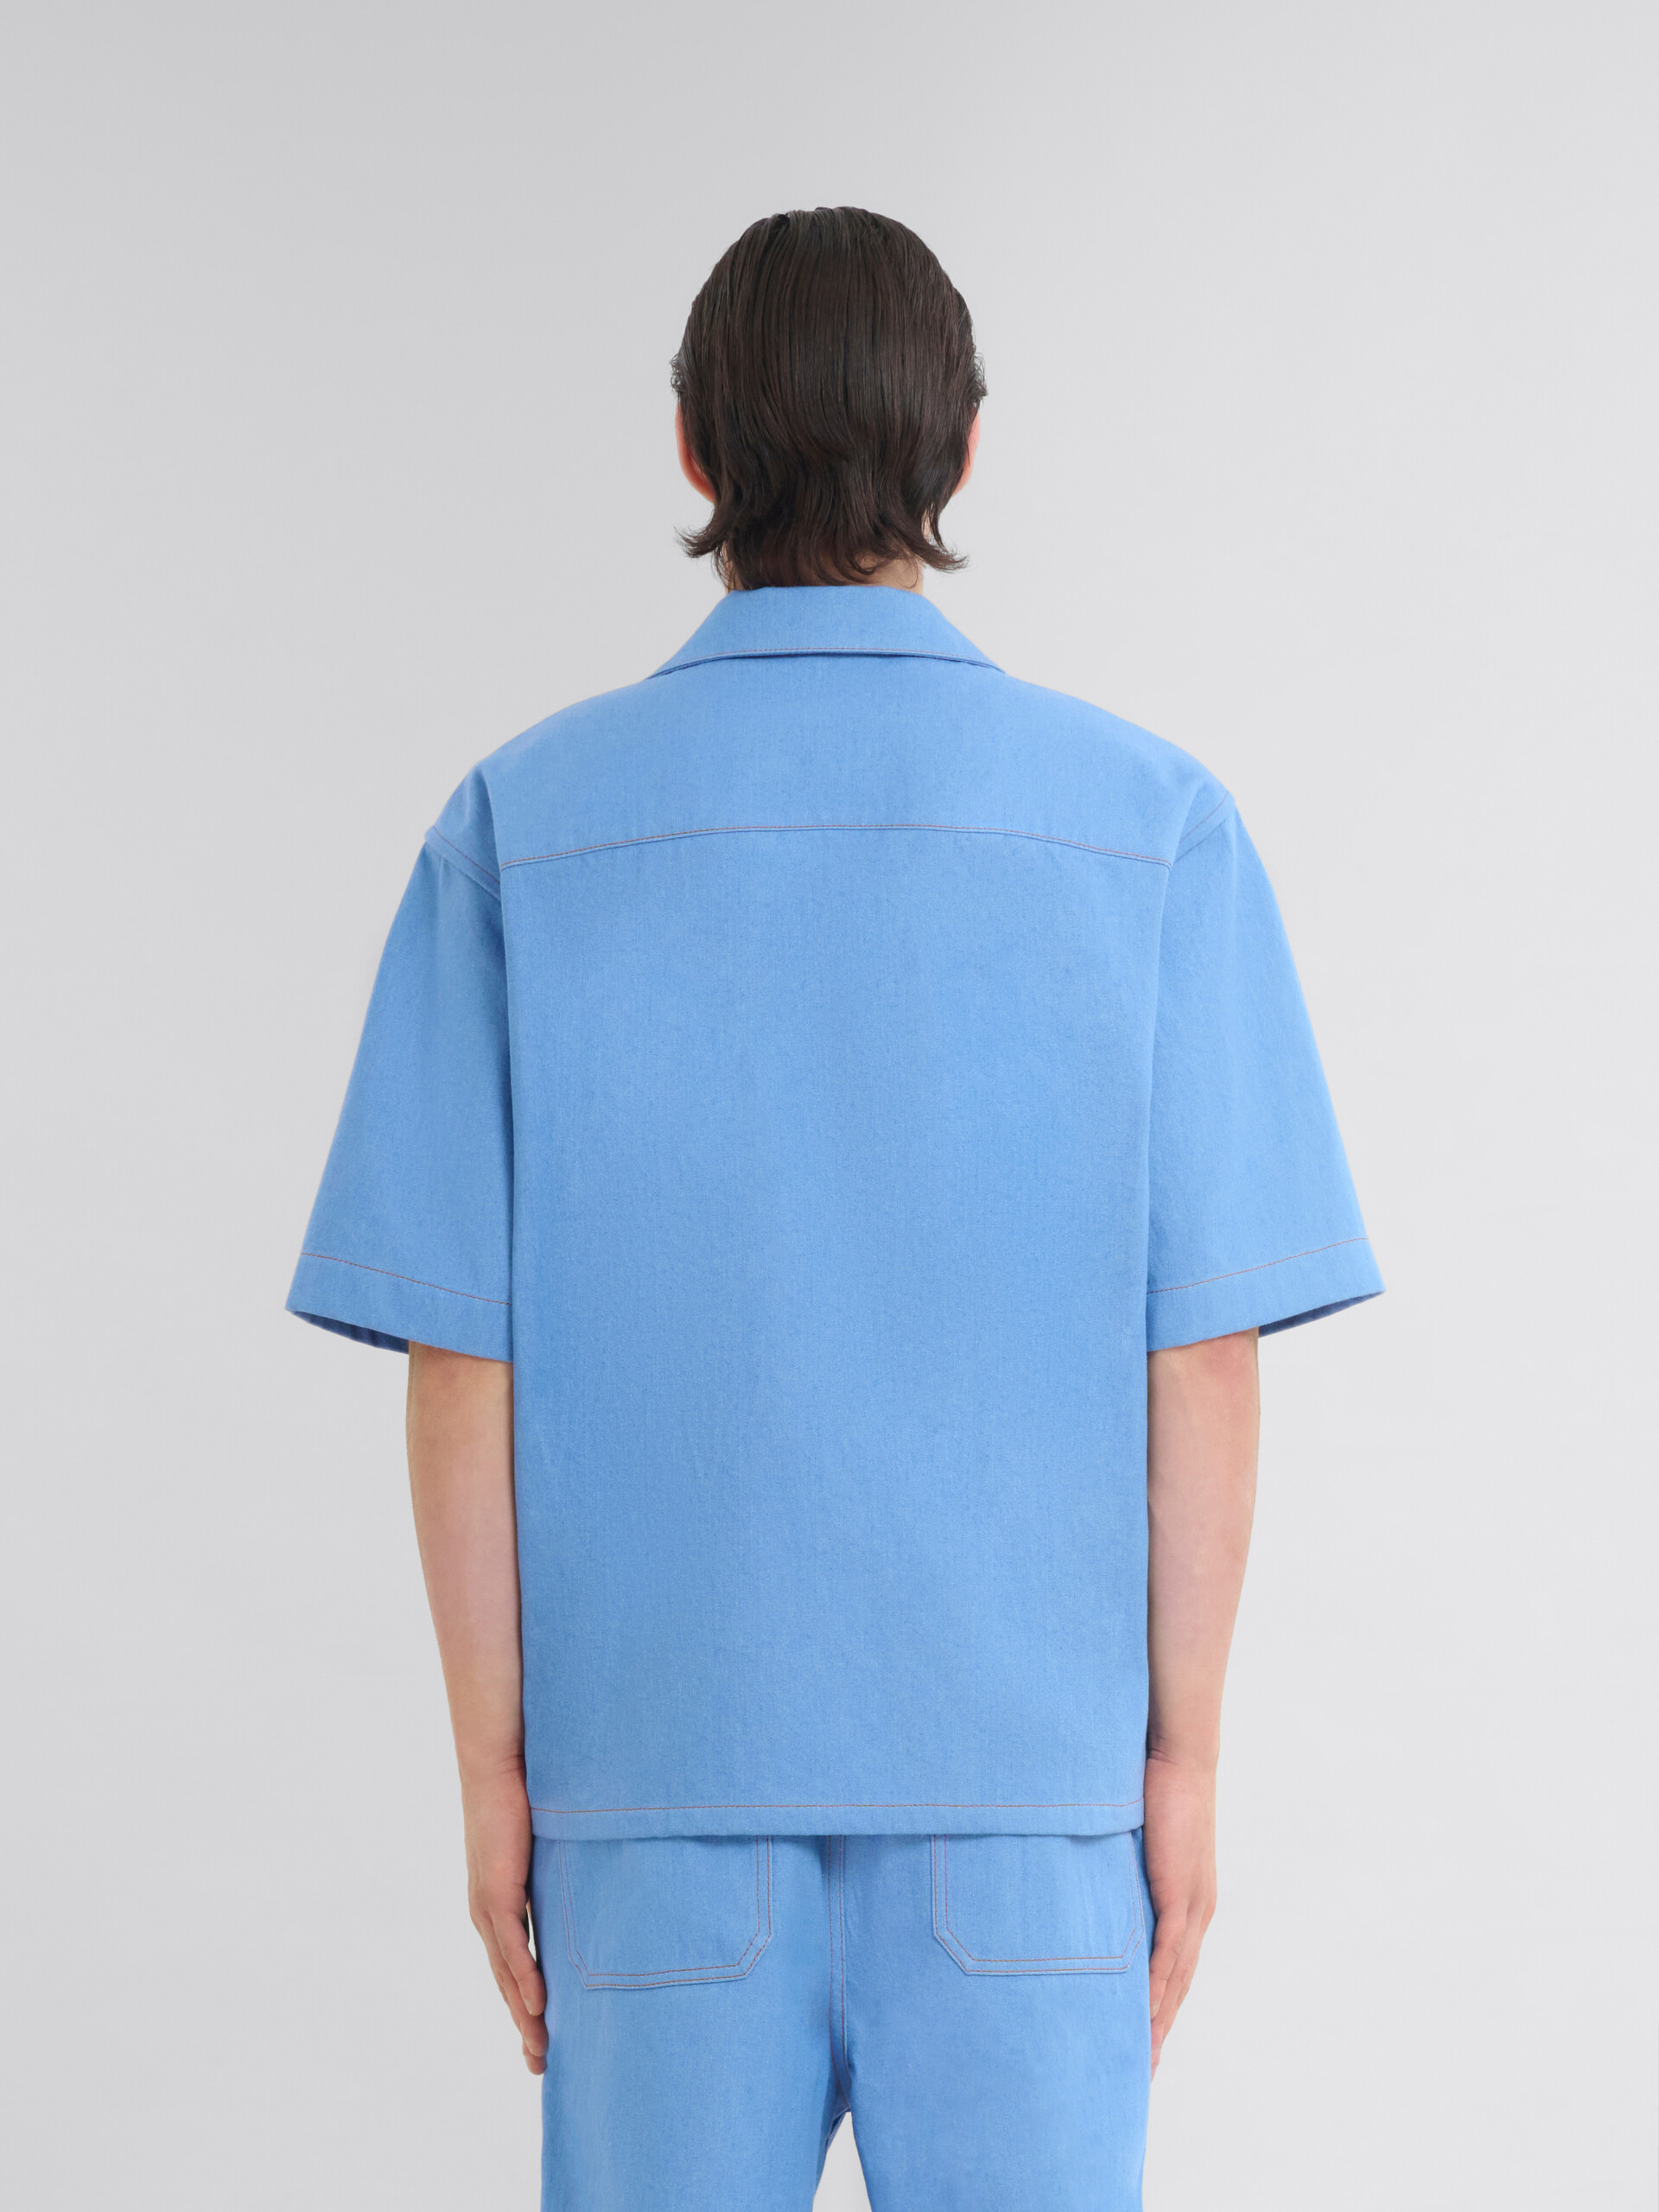 ブルー マルニ メンディングロゴ付き デニム製 ボーリングシャツ - シャツ - Image 3